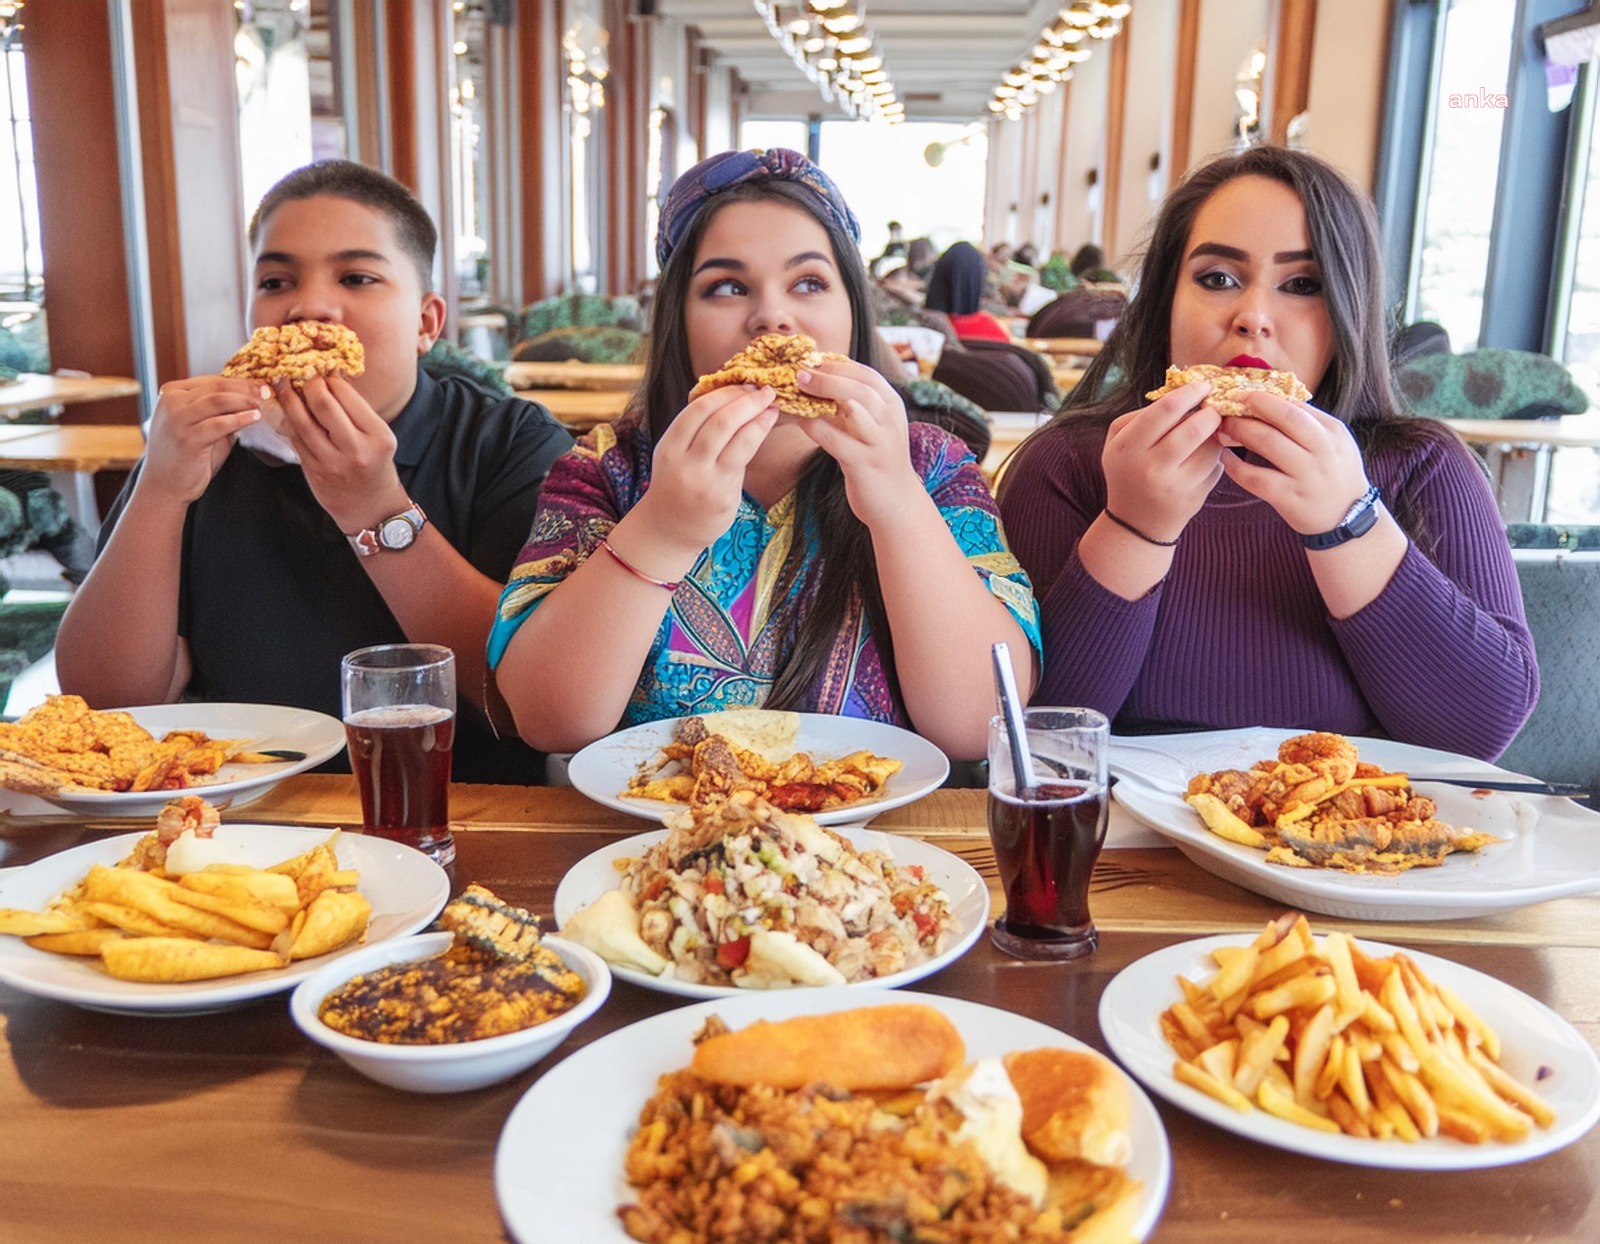 TÜİK verilerine göre, gençlerde obezite oranının arttığı tespit edildi